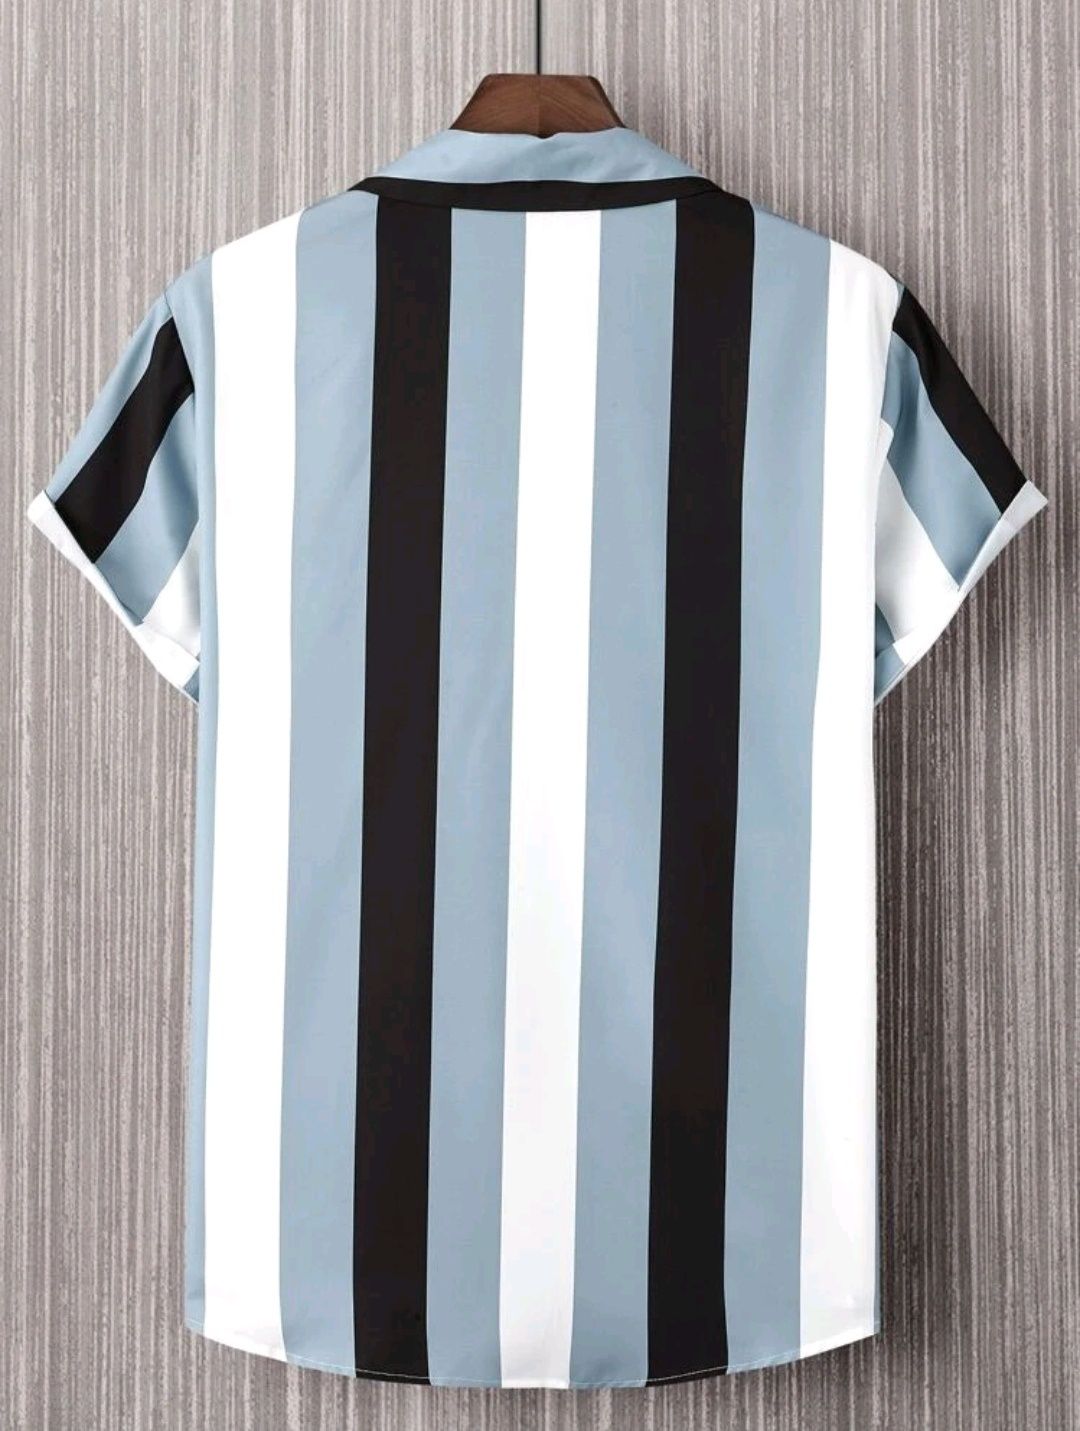 Camisa de Homem "Stripes" XL (Nova, baixa de preço)